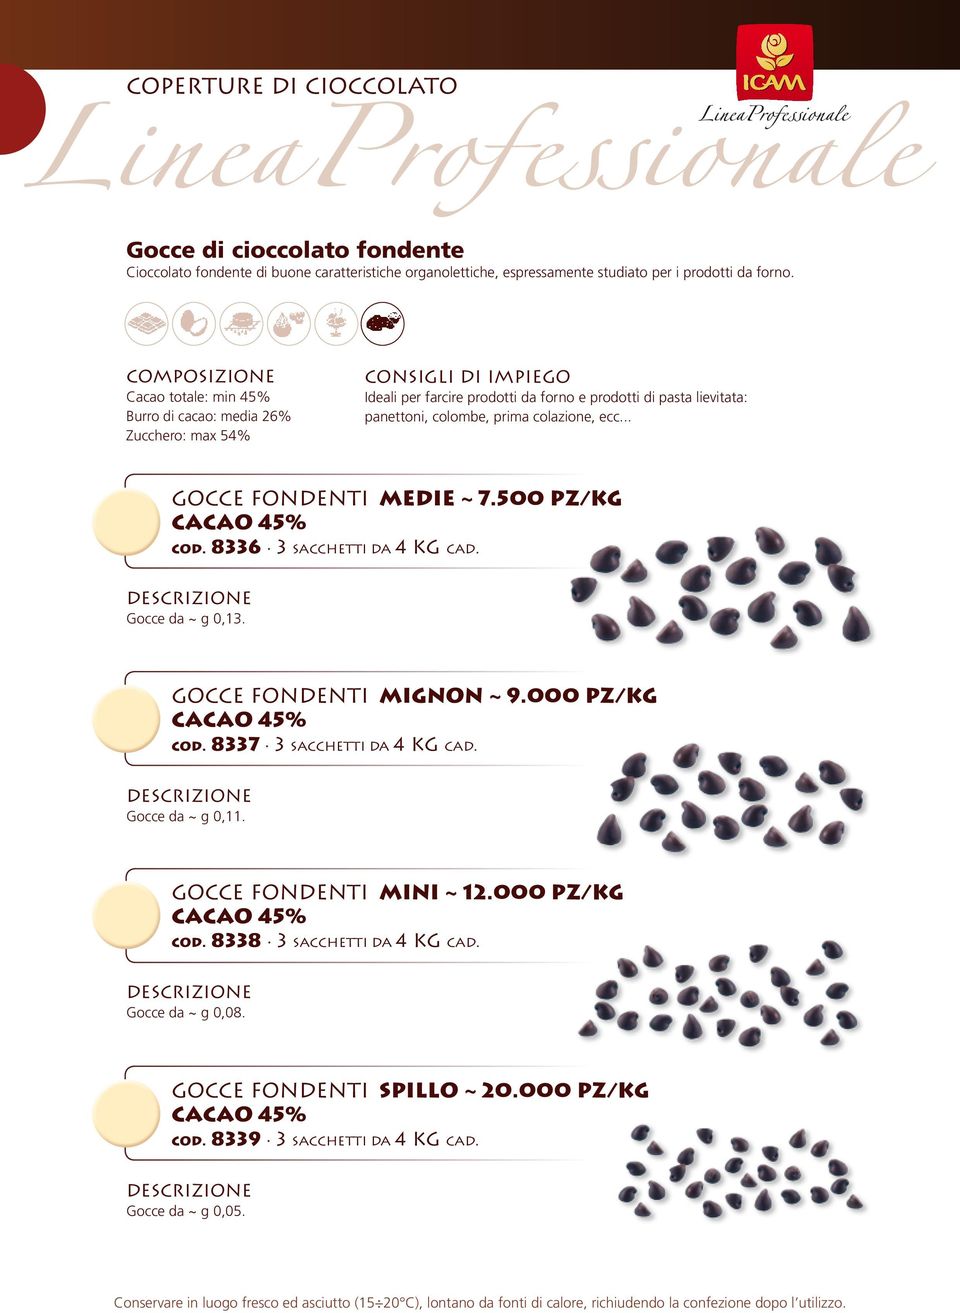 .. Gocce Fondenti Medie ~ 7.500 PZ/Kg cacao 45% cod. 8336 3 sacchetti da 4 KG cad. Gocce da ~ g 0,13. Gocce Fondenti Mignon ~ 9.000 PZ/Kg cacao 45% cod.